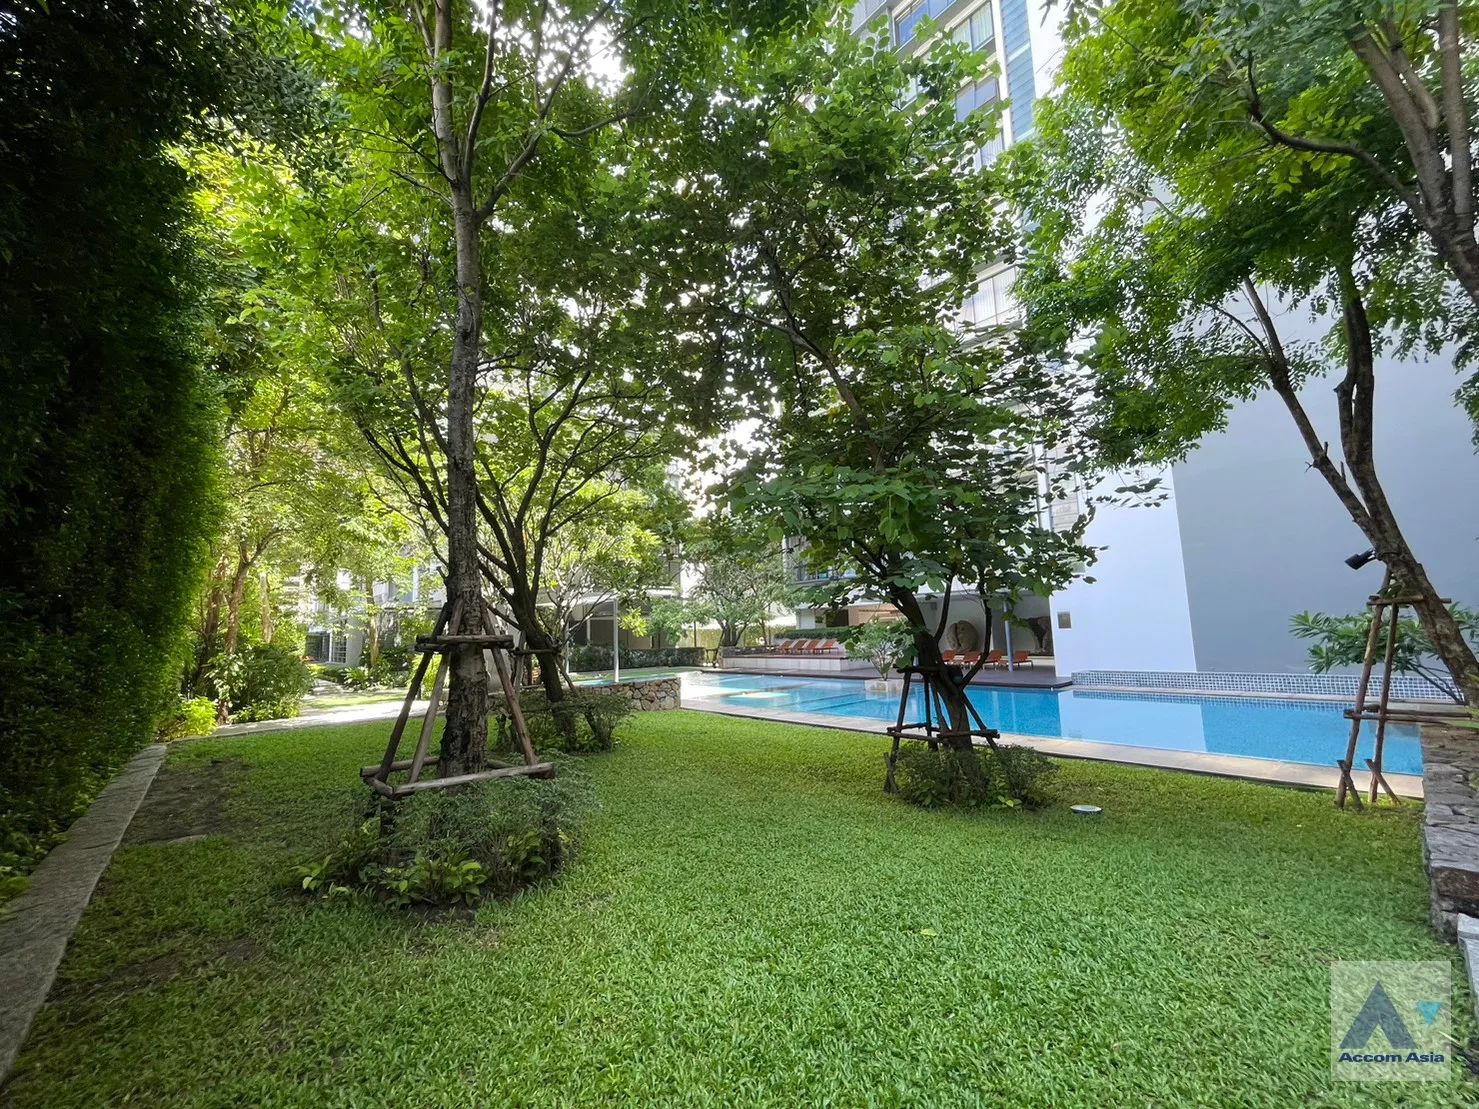  2 br Condominium For Rent in Sukhumvit ,Bangkok BTS Asok - MRT Sukhumvit at Domus 16 AA35293